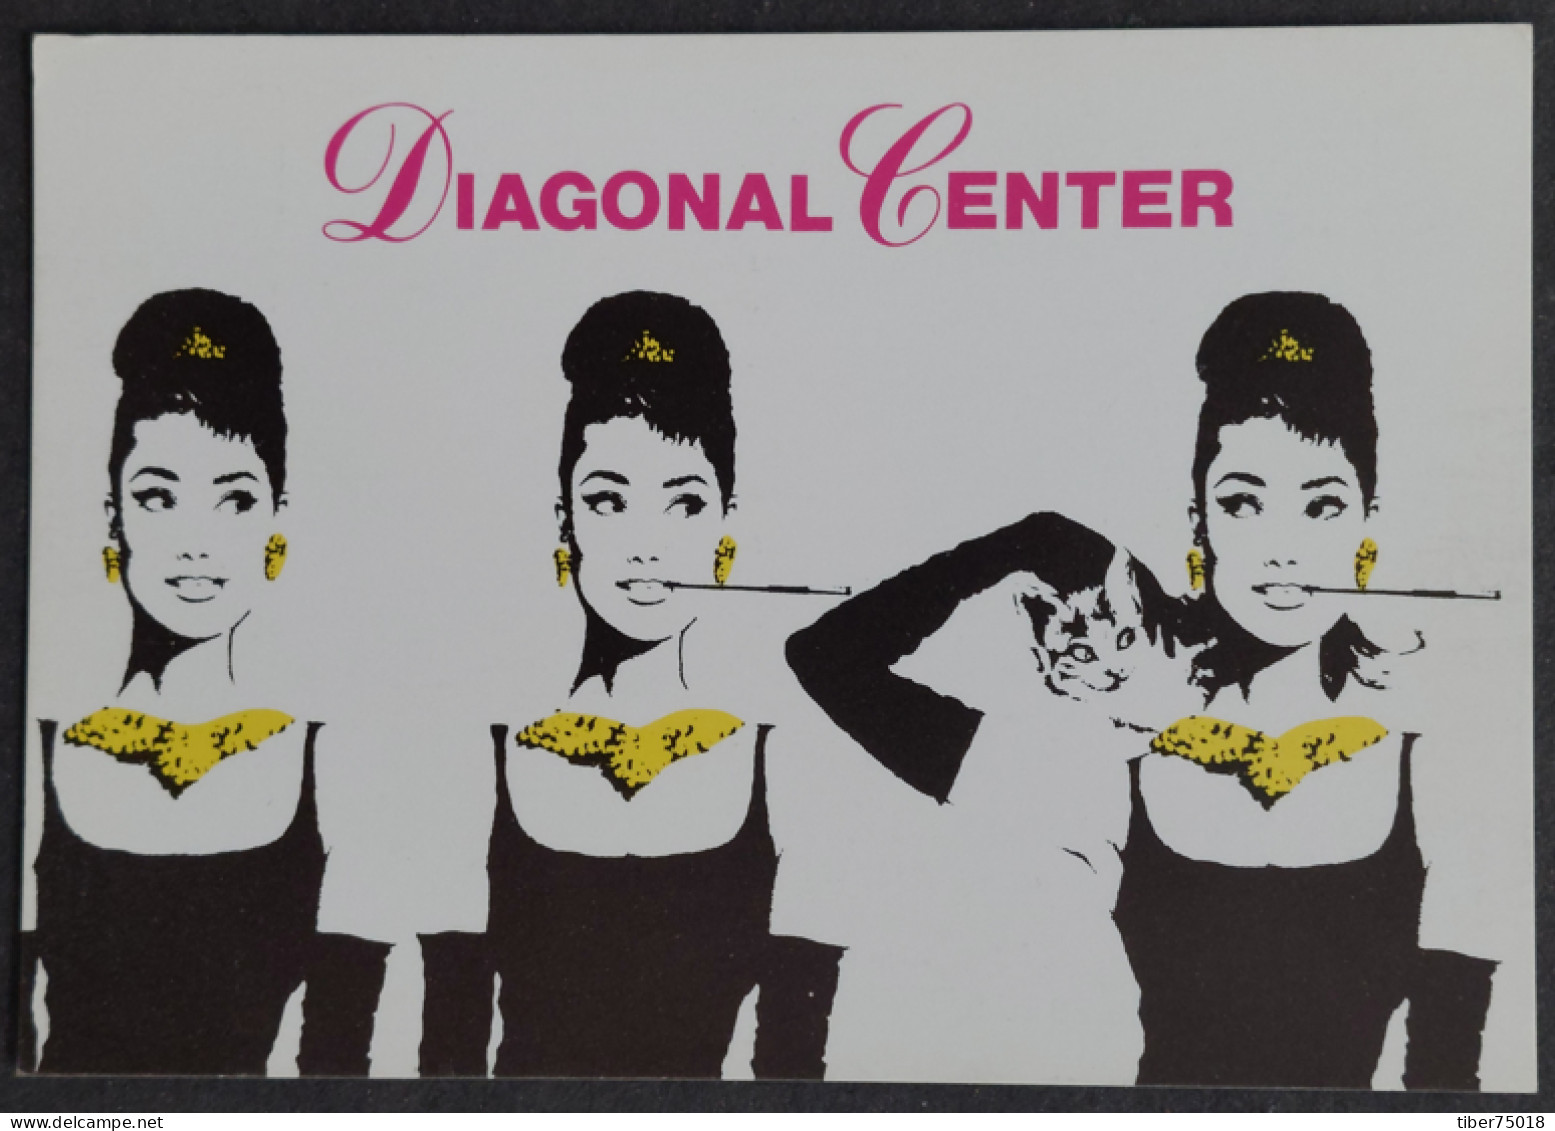 Carte Postale - Diagonal Center (Audrey Hepburn Dans "Breakfast At Tiffany's") (film - Cinéma) Barcelona - Publicité